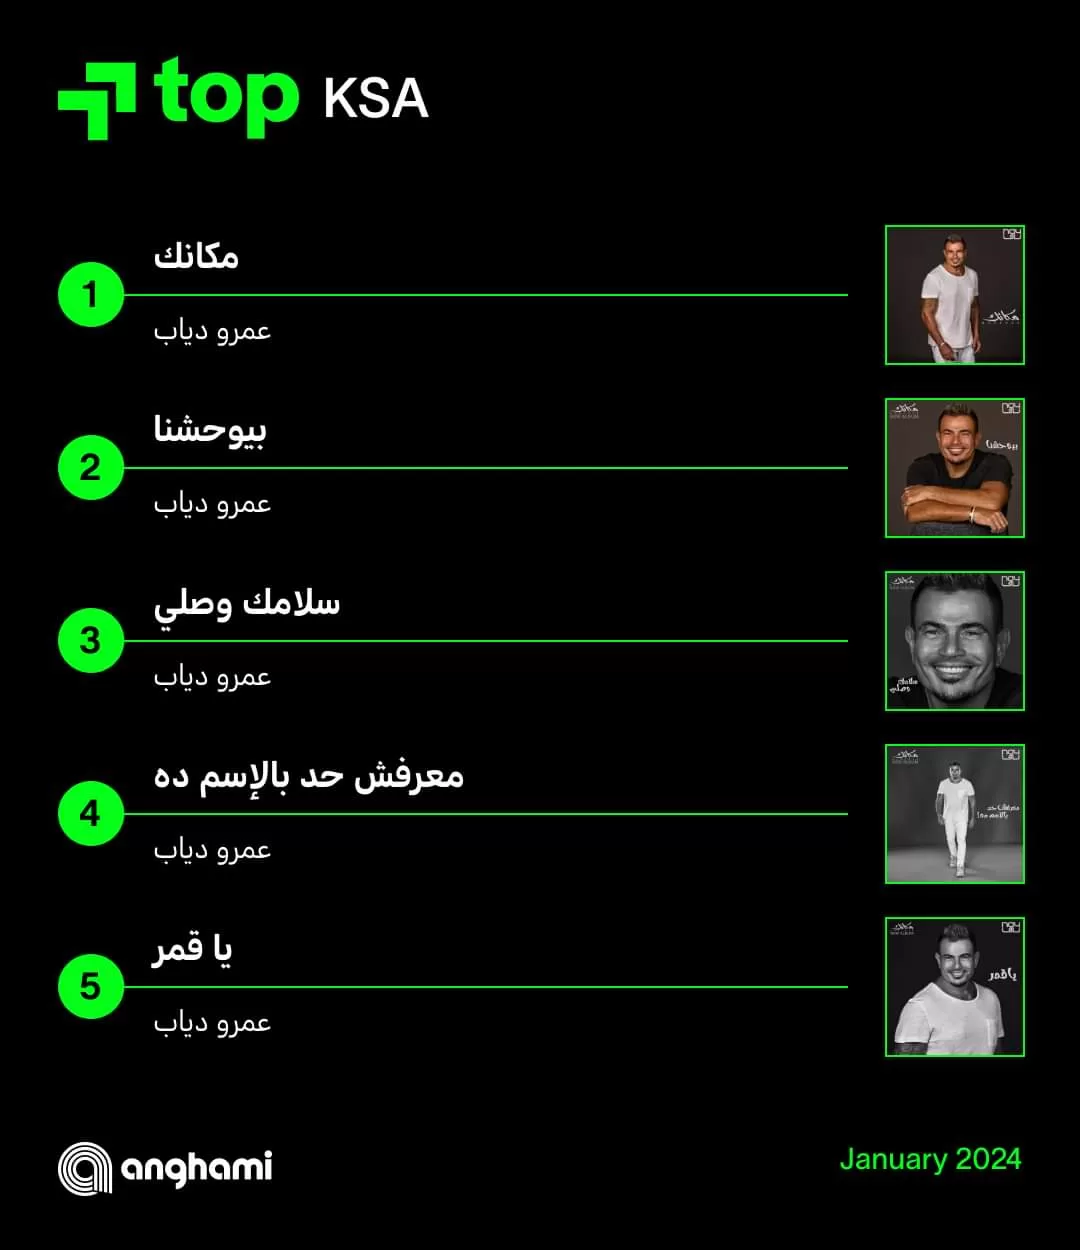 عمرو دياب يكتسح قائمة الأعلى استماعًا على أنغام في معظم الدول العربية